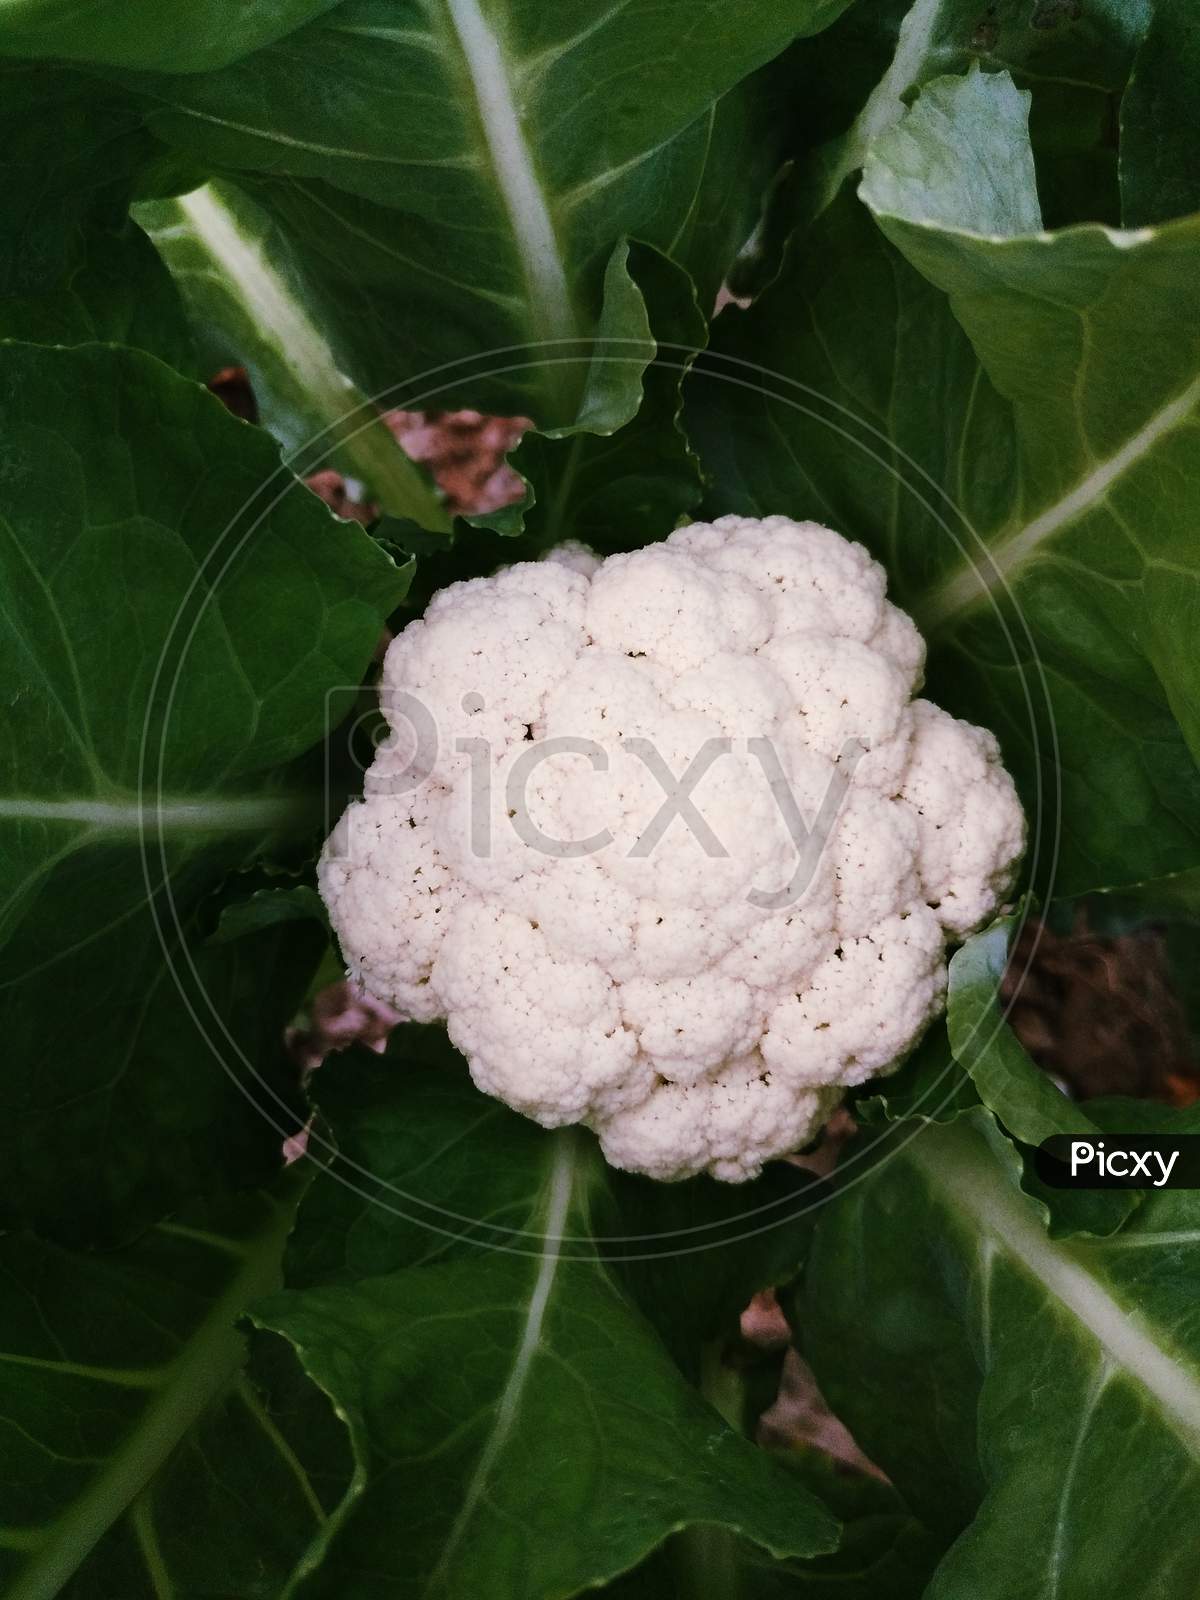 It's a White cauliflower